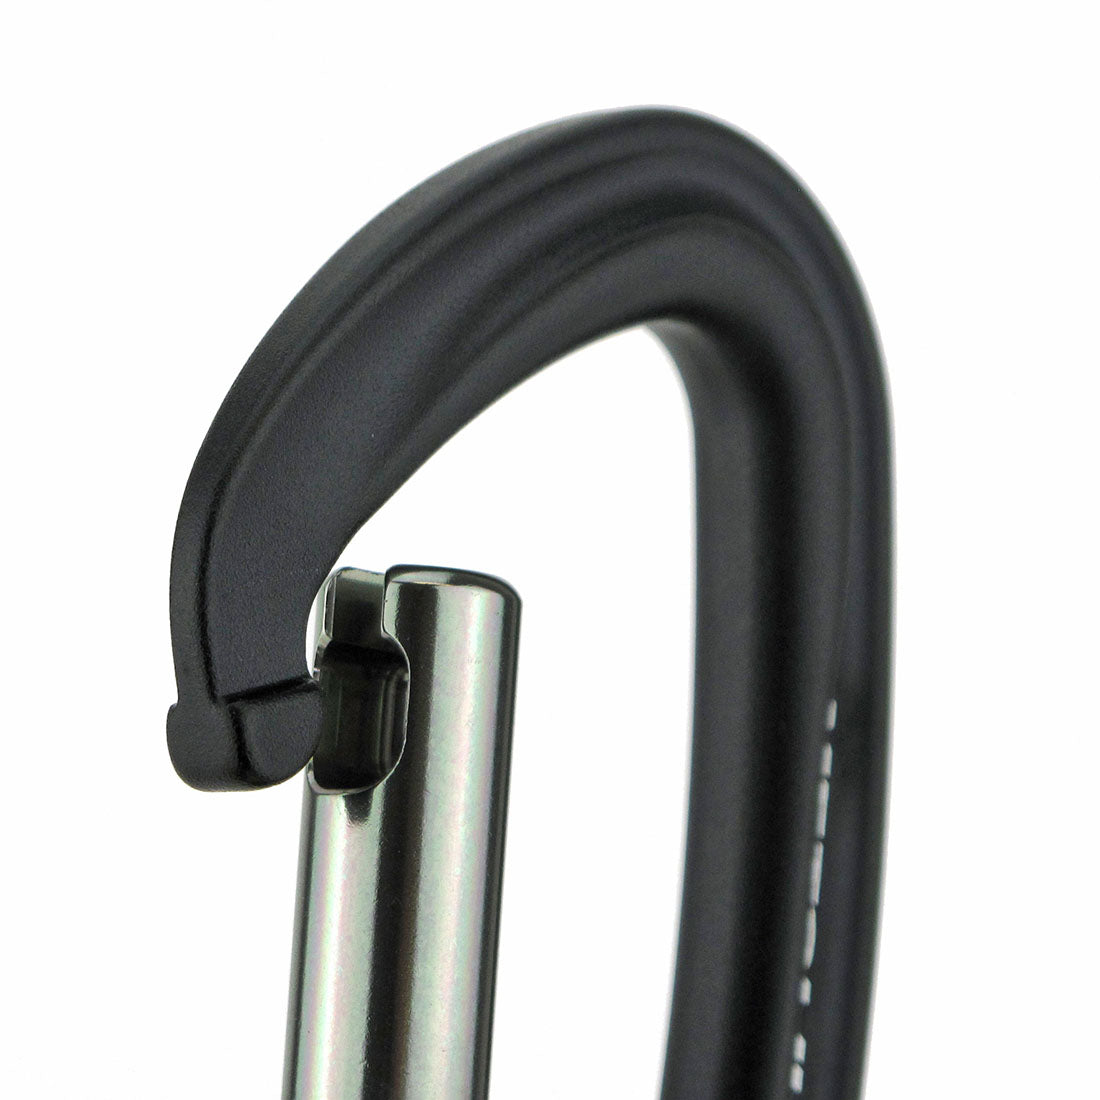 Non-Locking Carabiner - Rated - For Rigging, Suspension, etc.